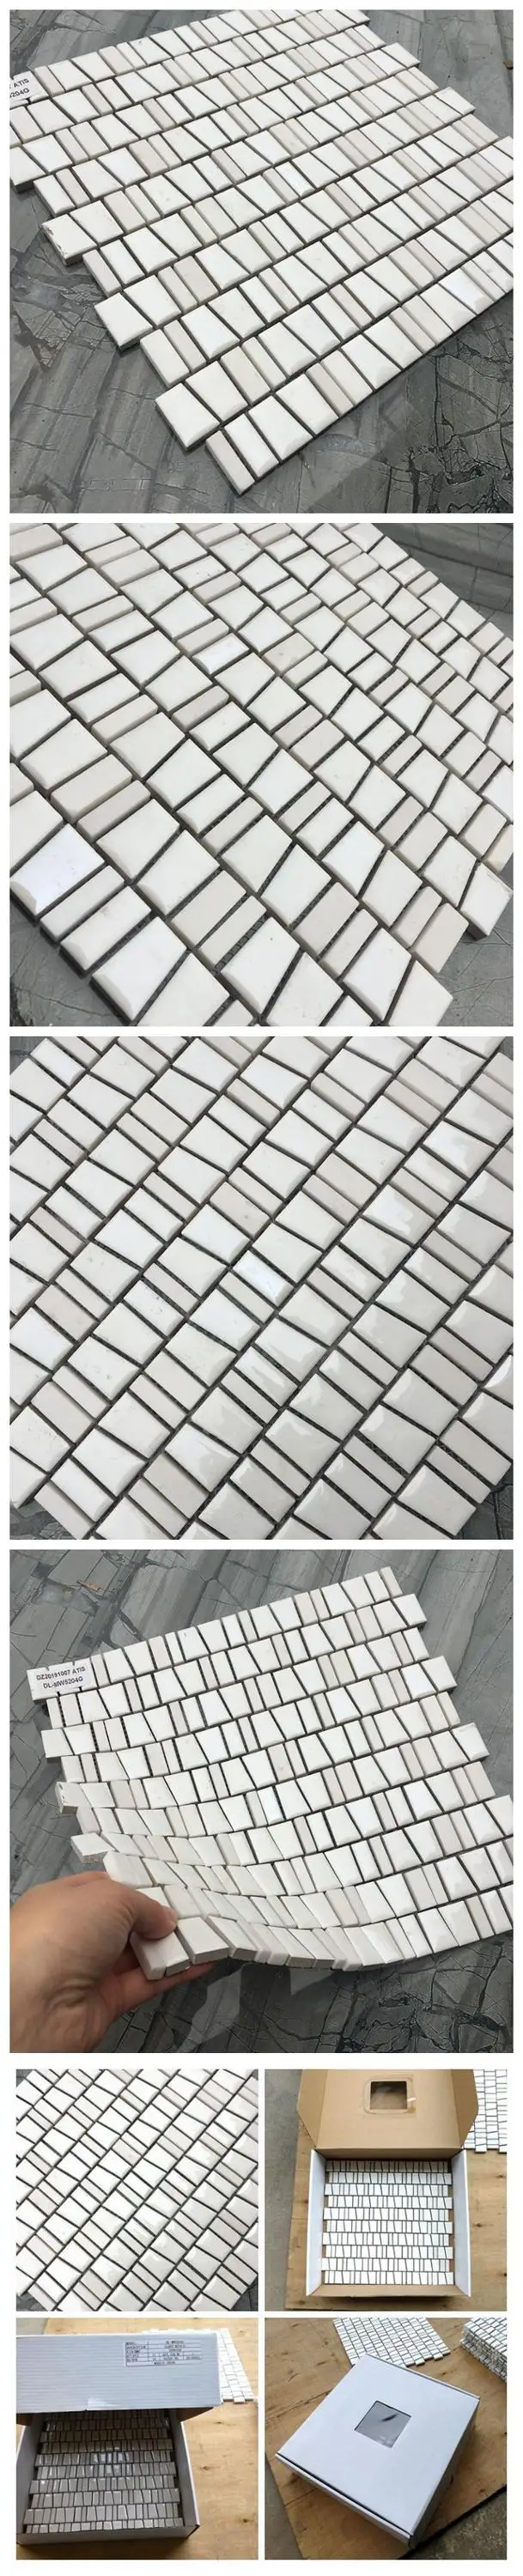 Vente chaude de carreaux de mosaïque en céramique et pierre blanche pour salle de bain et cuisine Foshan Chine